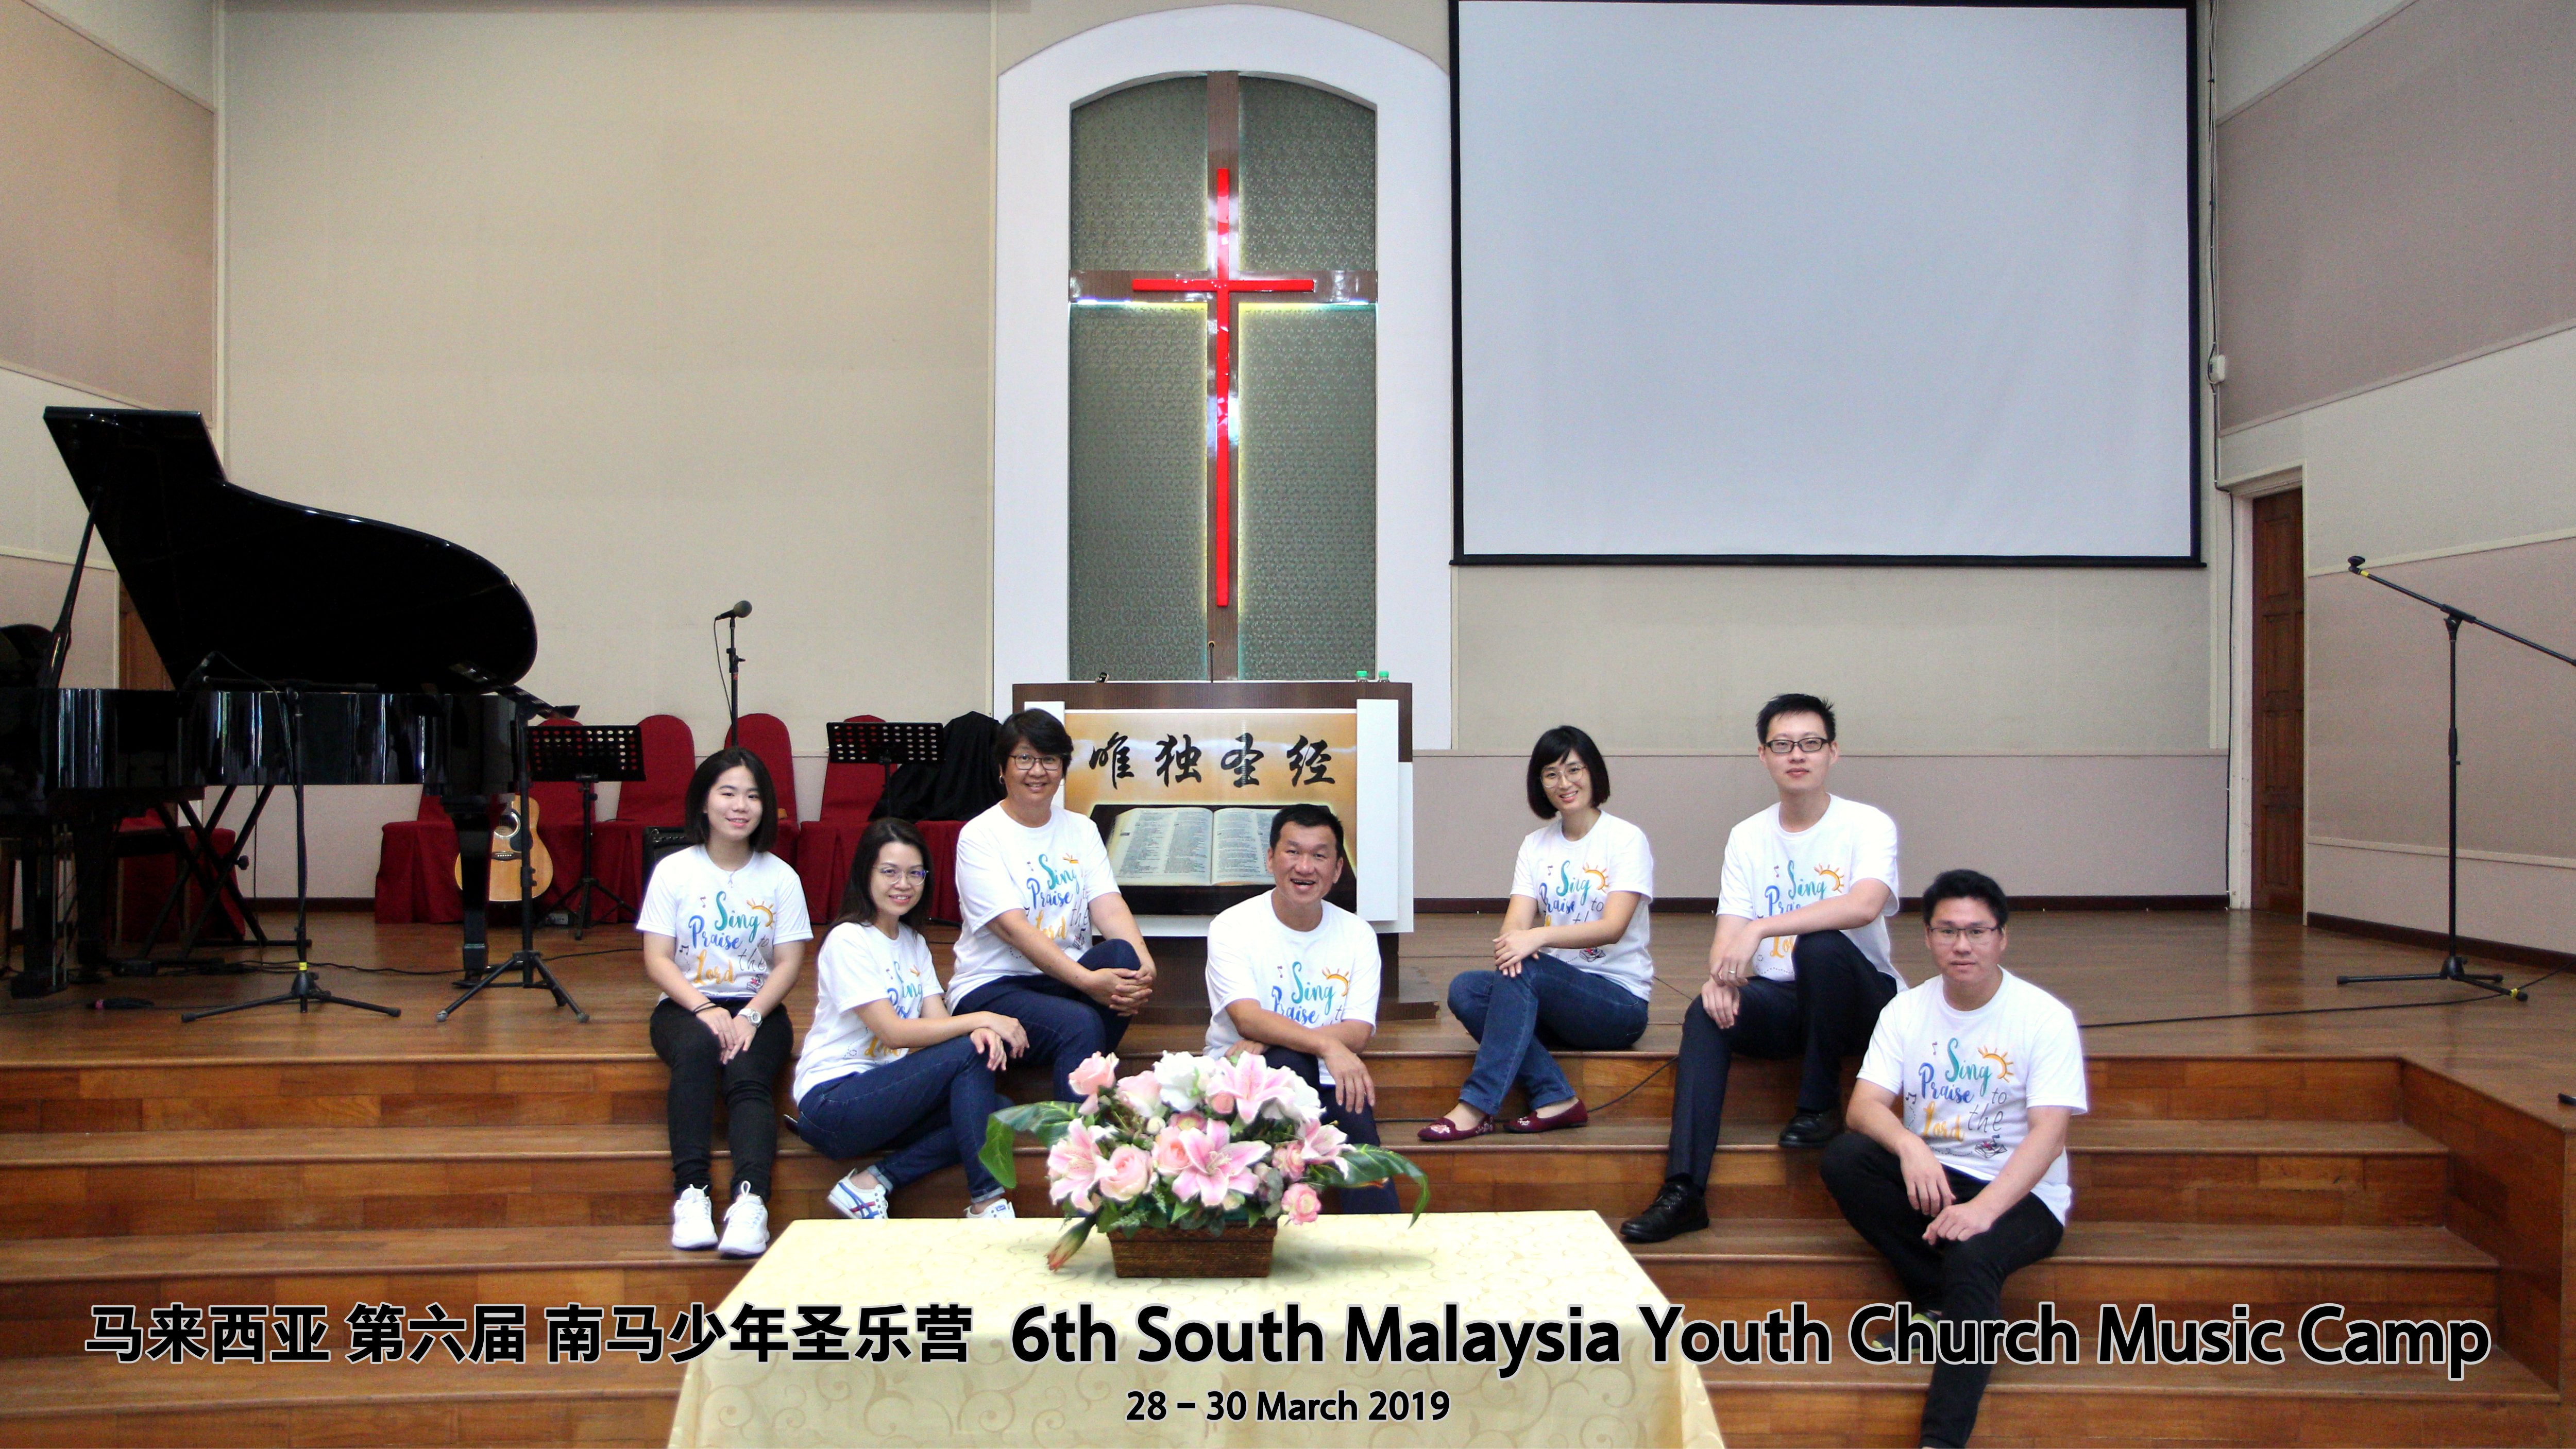 马来西亚 第六届 南马少年圣乐营 6th South Malaysia Youth Church Music Camp A01-005